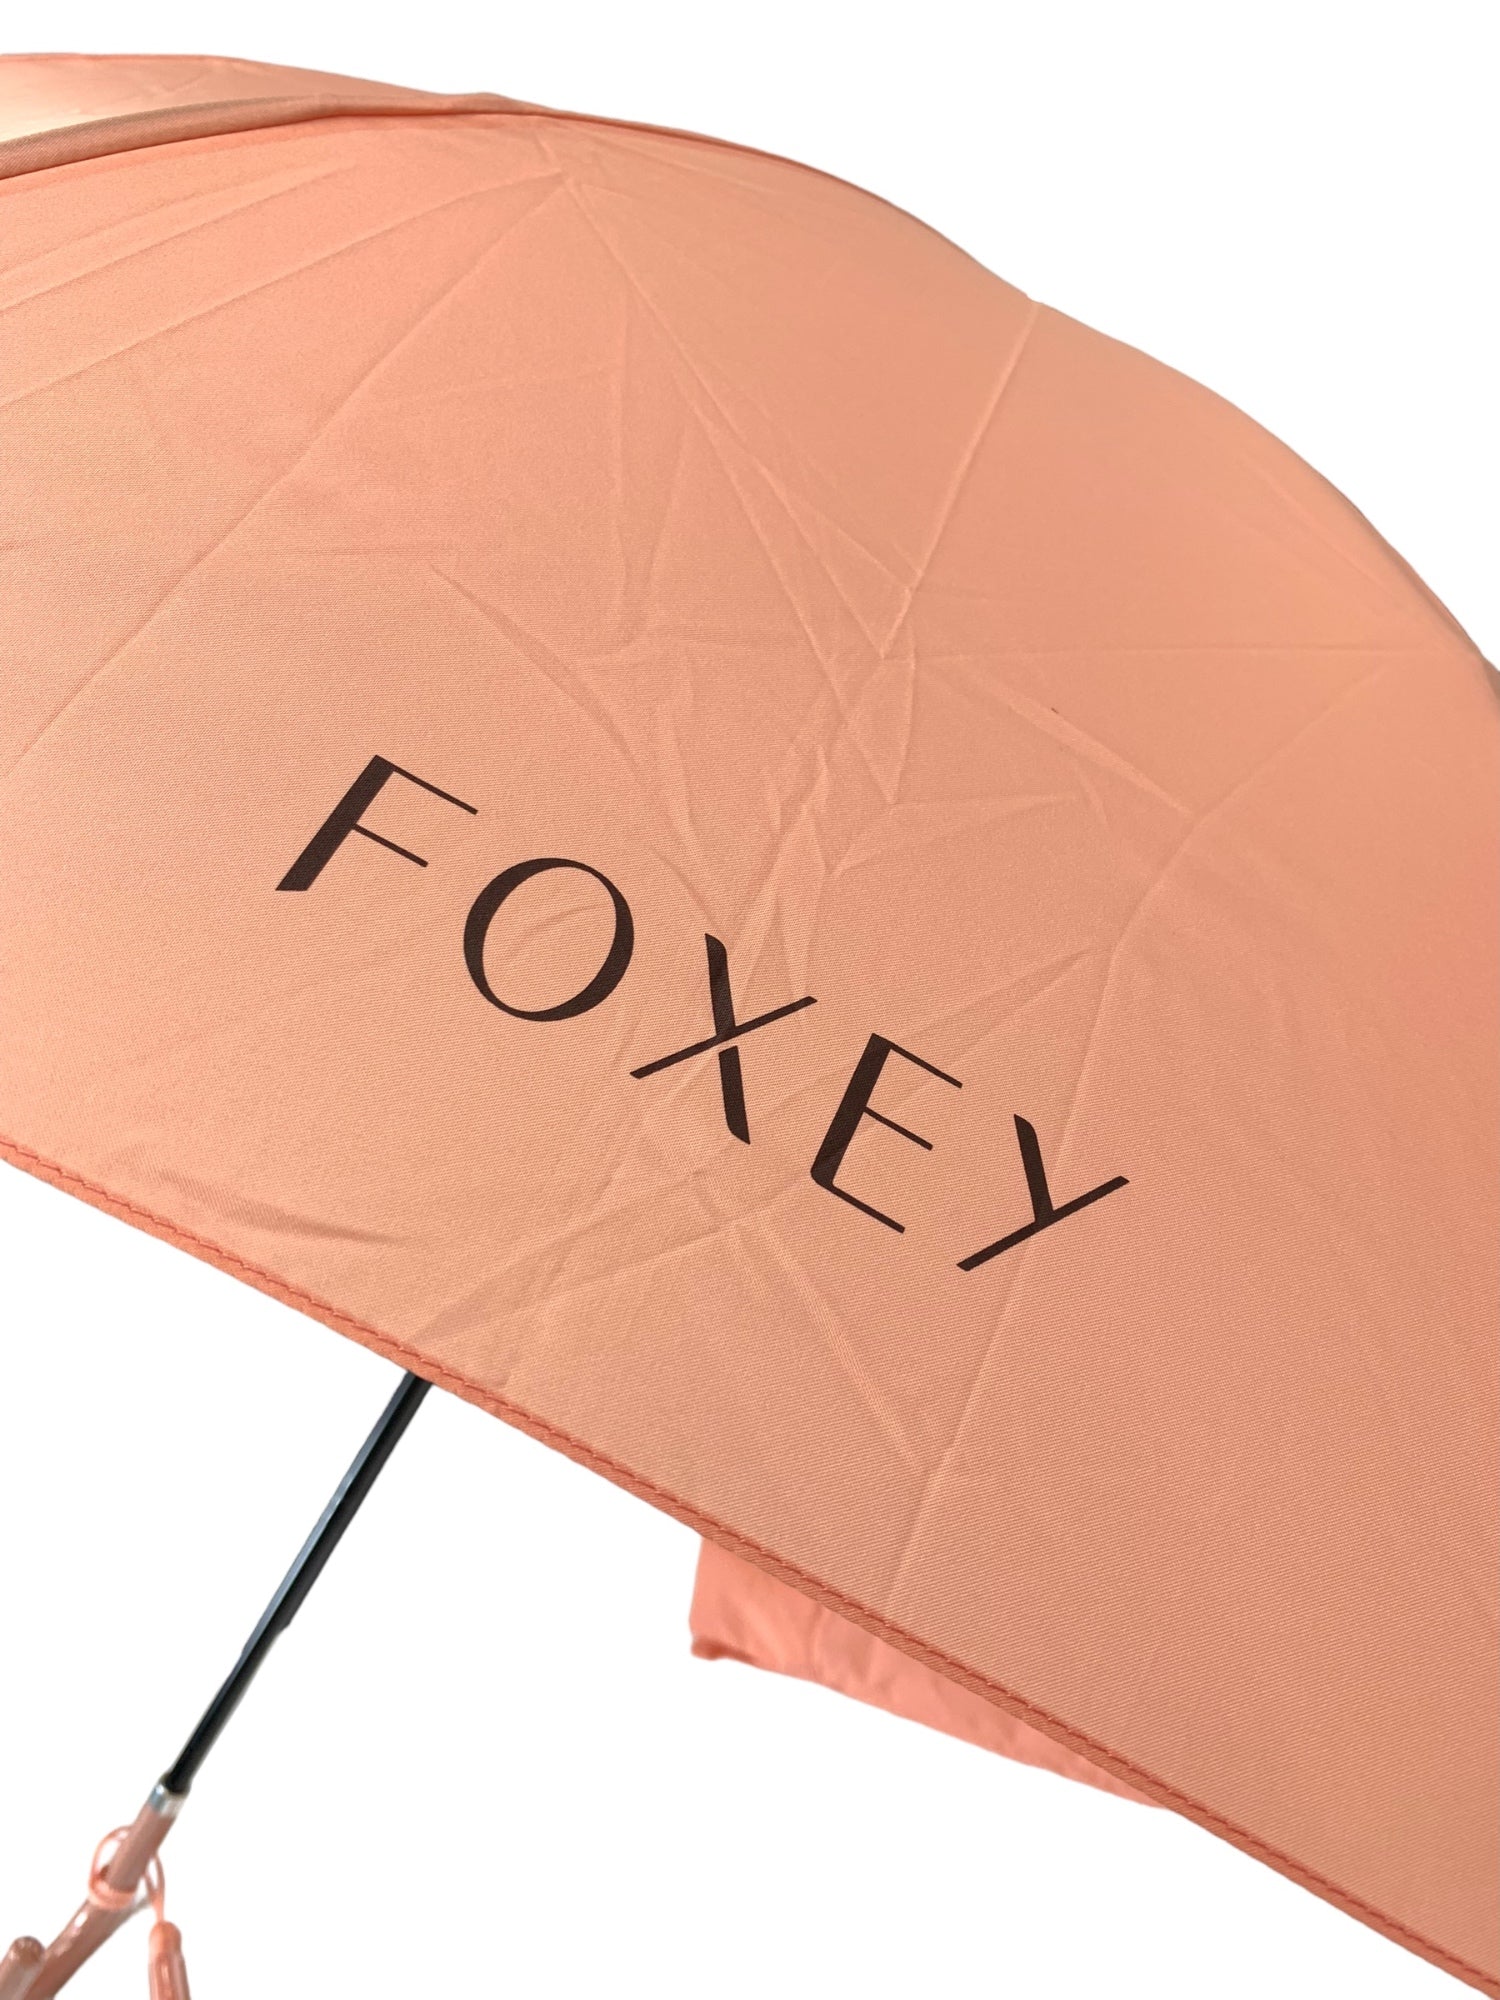 新品未使用 FOXEY フォクシー 傘 折りたたみ ピンク 限定 ノベルティ 